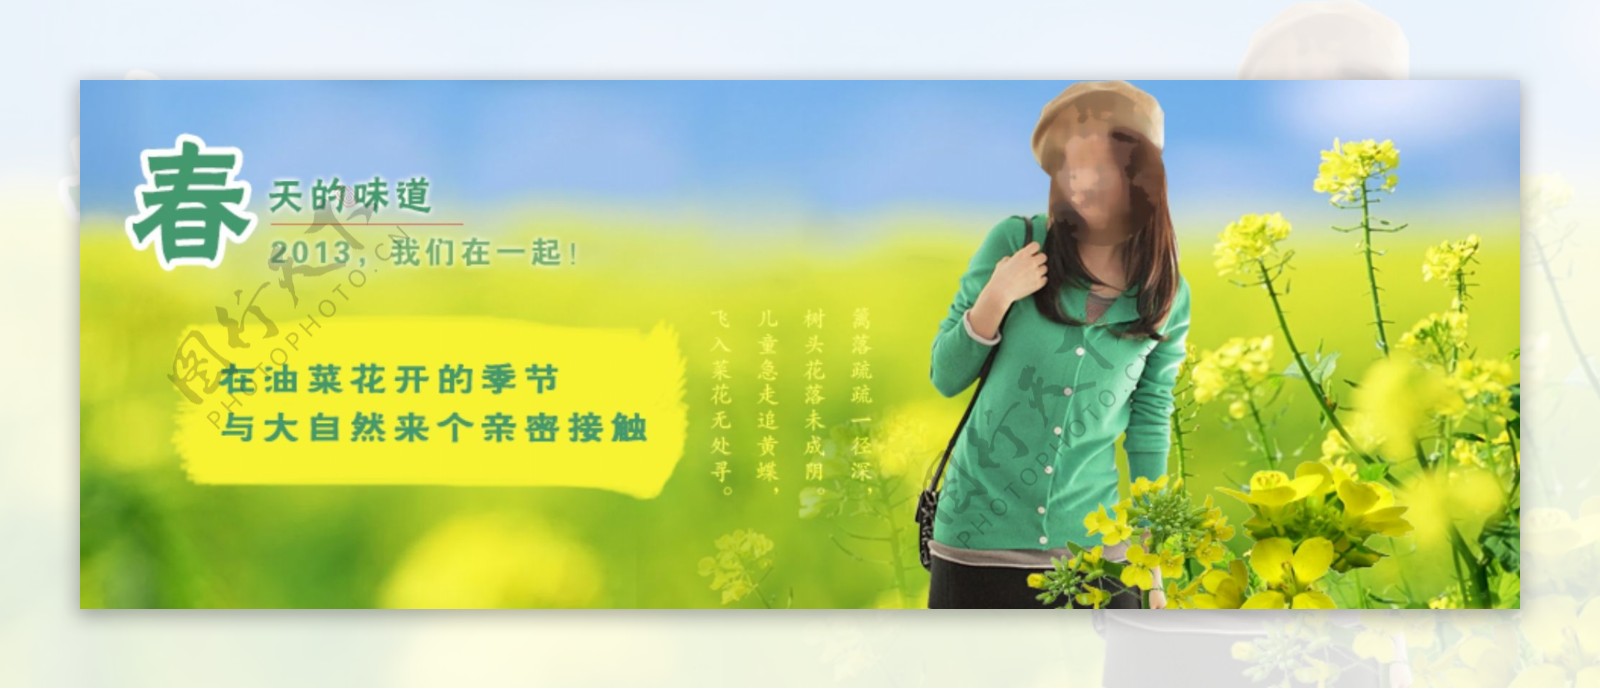 渝彩羊绒衫2013年春装广告图片